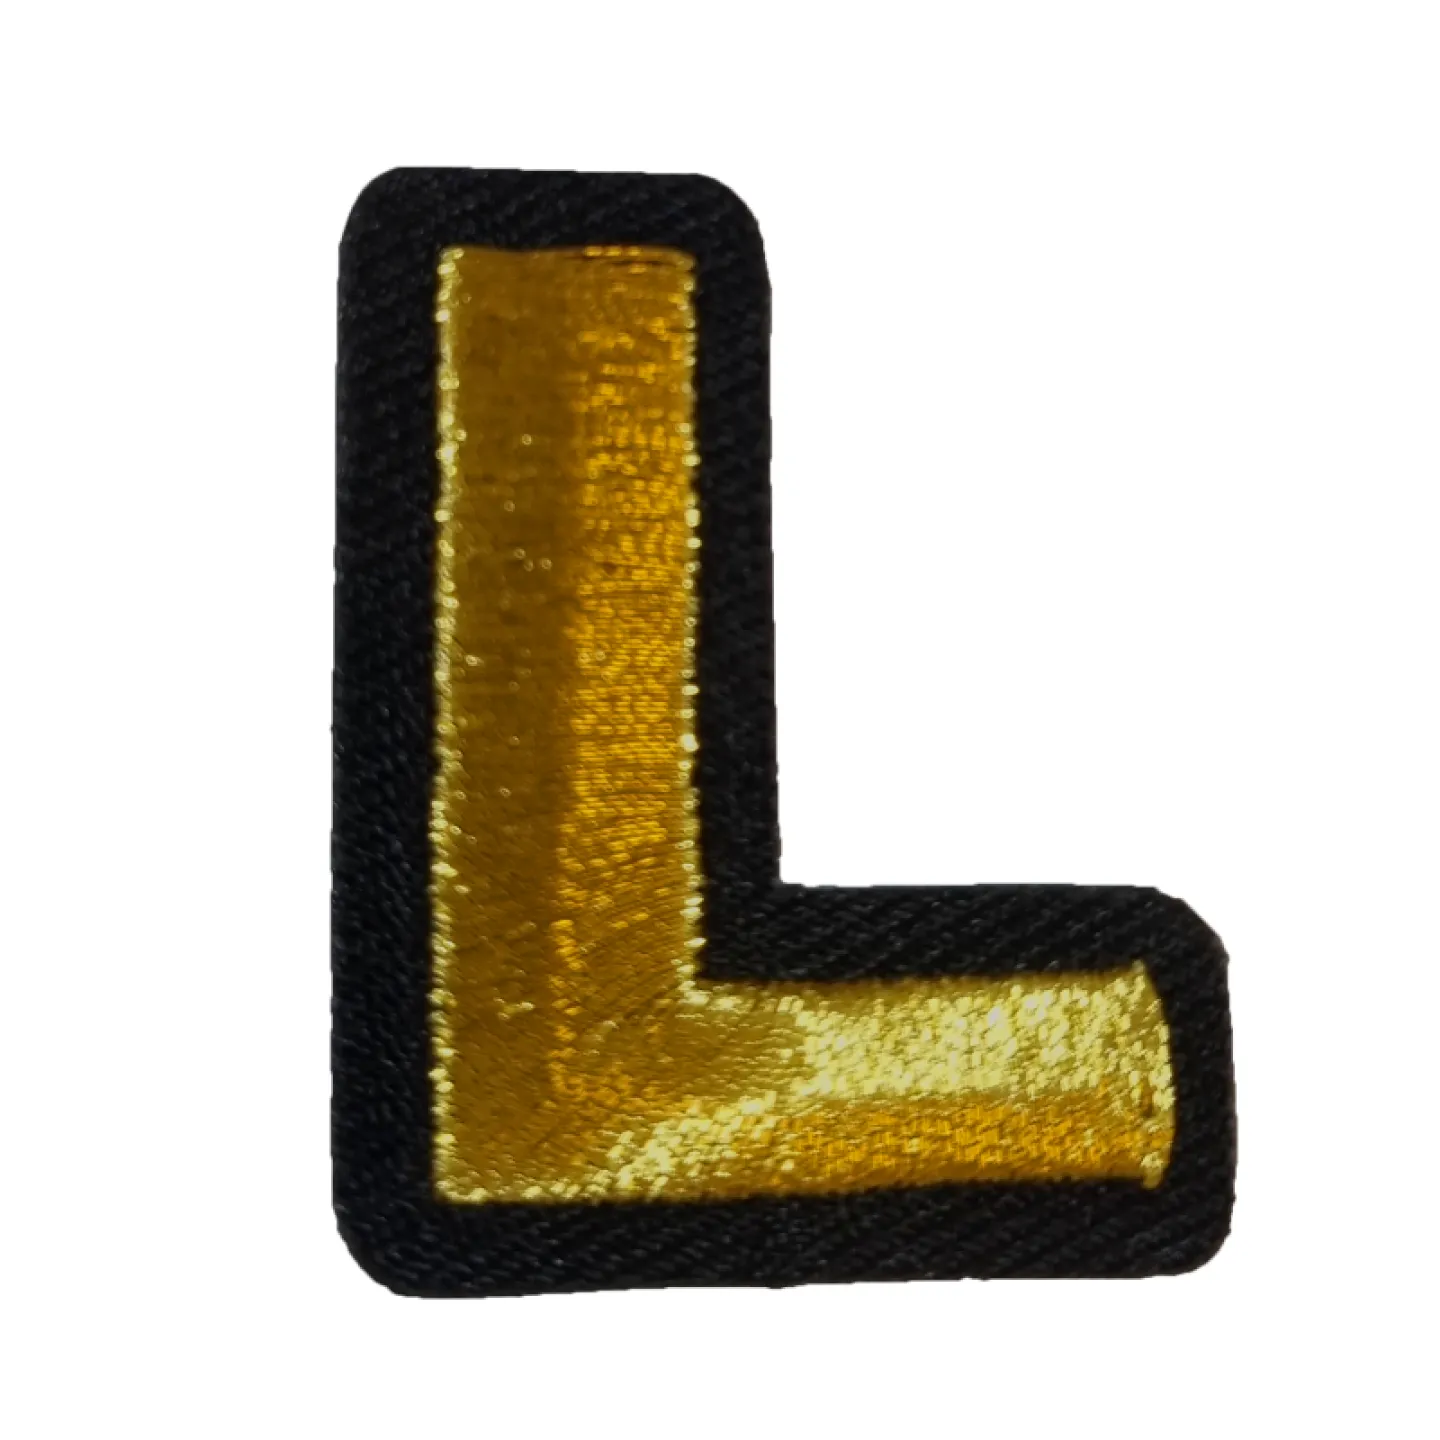 Kielegat embleem Gouden letter L.